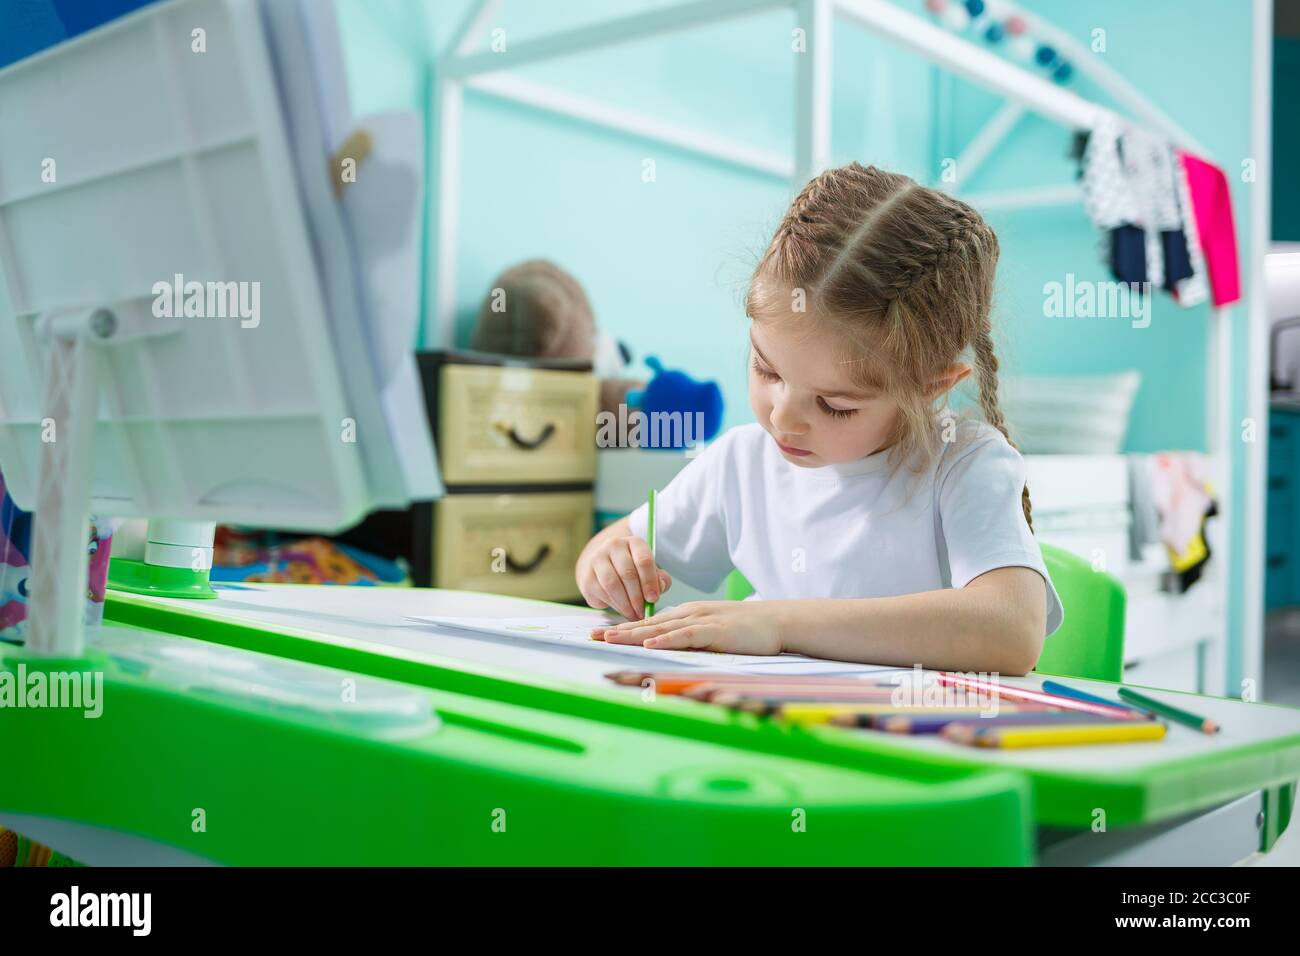 Ritratto di una bambina carina che guarda la macchina fotografica e sorride mentre disegnano le immagini o fanno i compiti, seduto ad un tavolo nell'interno domestico Foto Stock